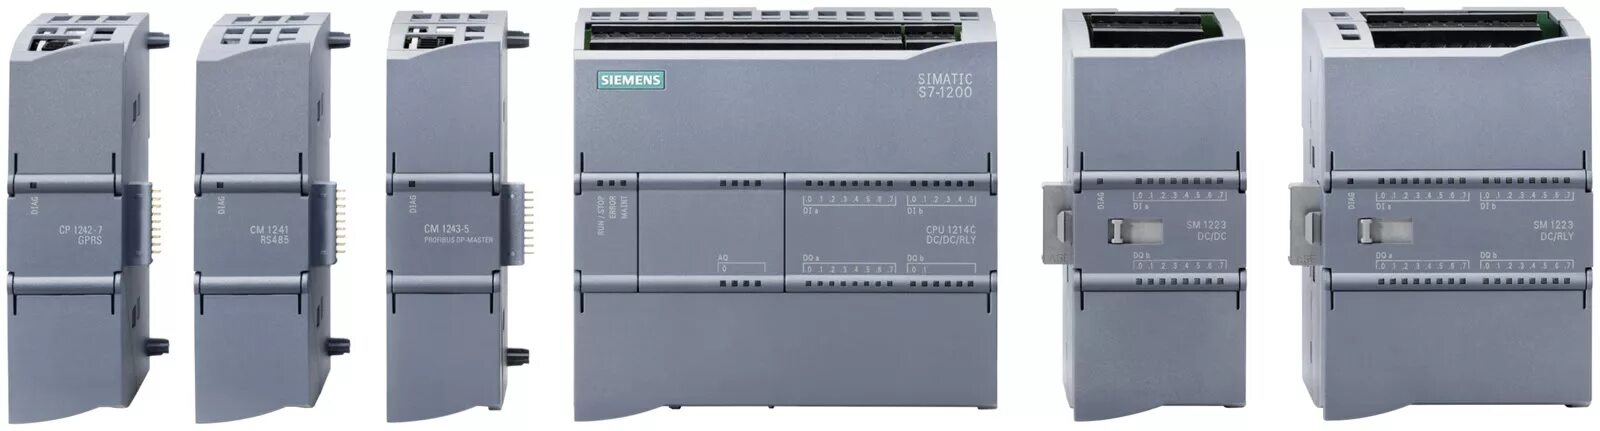 Siemens simatic s7 1200. Контроллер Siemens s7-1200. Контроллер SIMATIC s7-1200. S7-1200 Siemens Клеммник. Контроллер Siemens SIMATIC s7-1200 с датчиком.